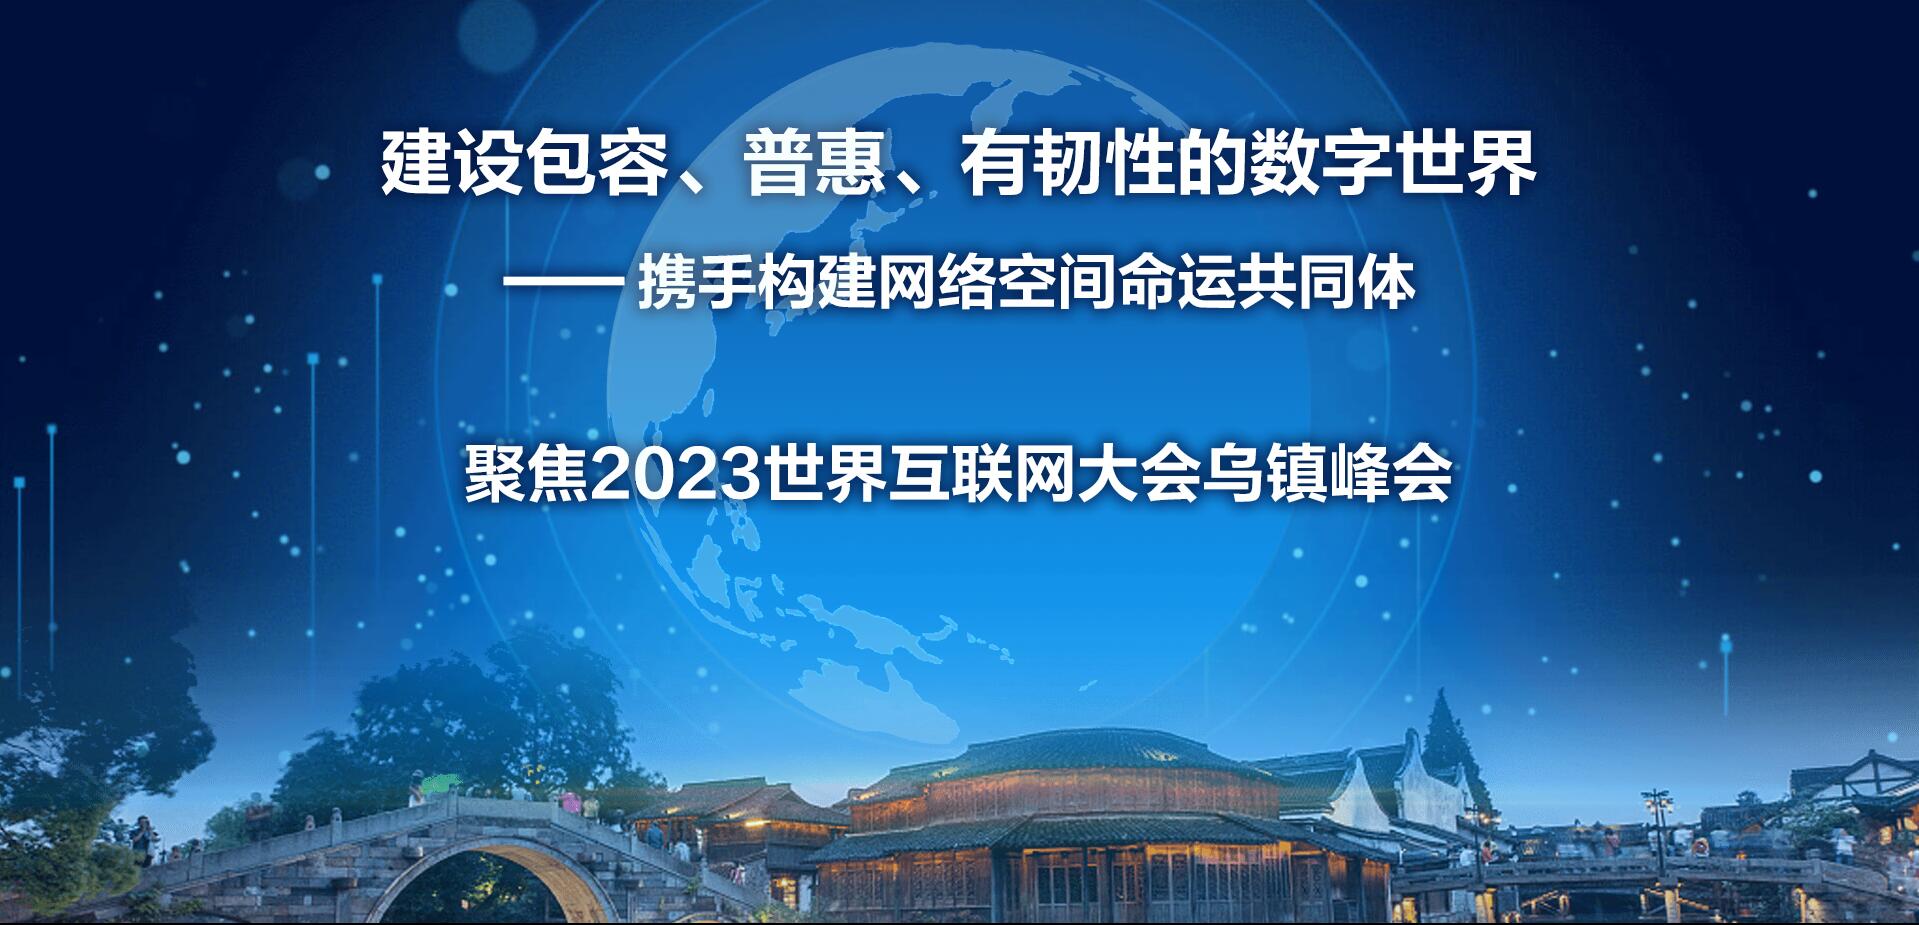 【专题】2023年世界互联网大会乌镇峰会